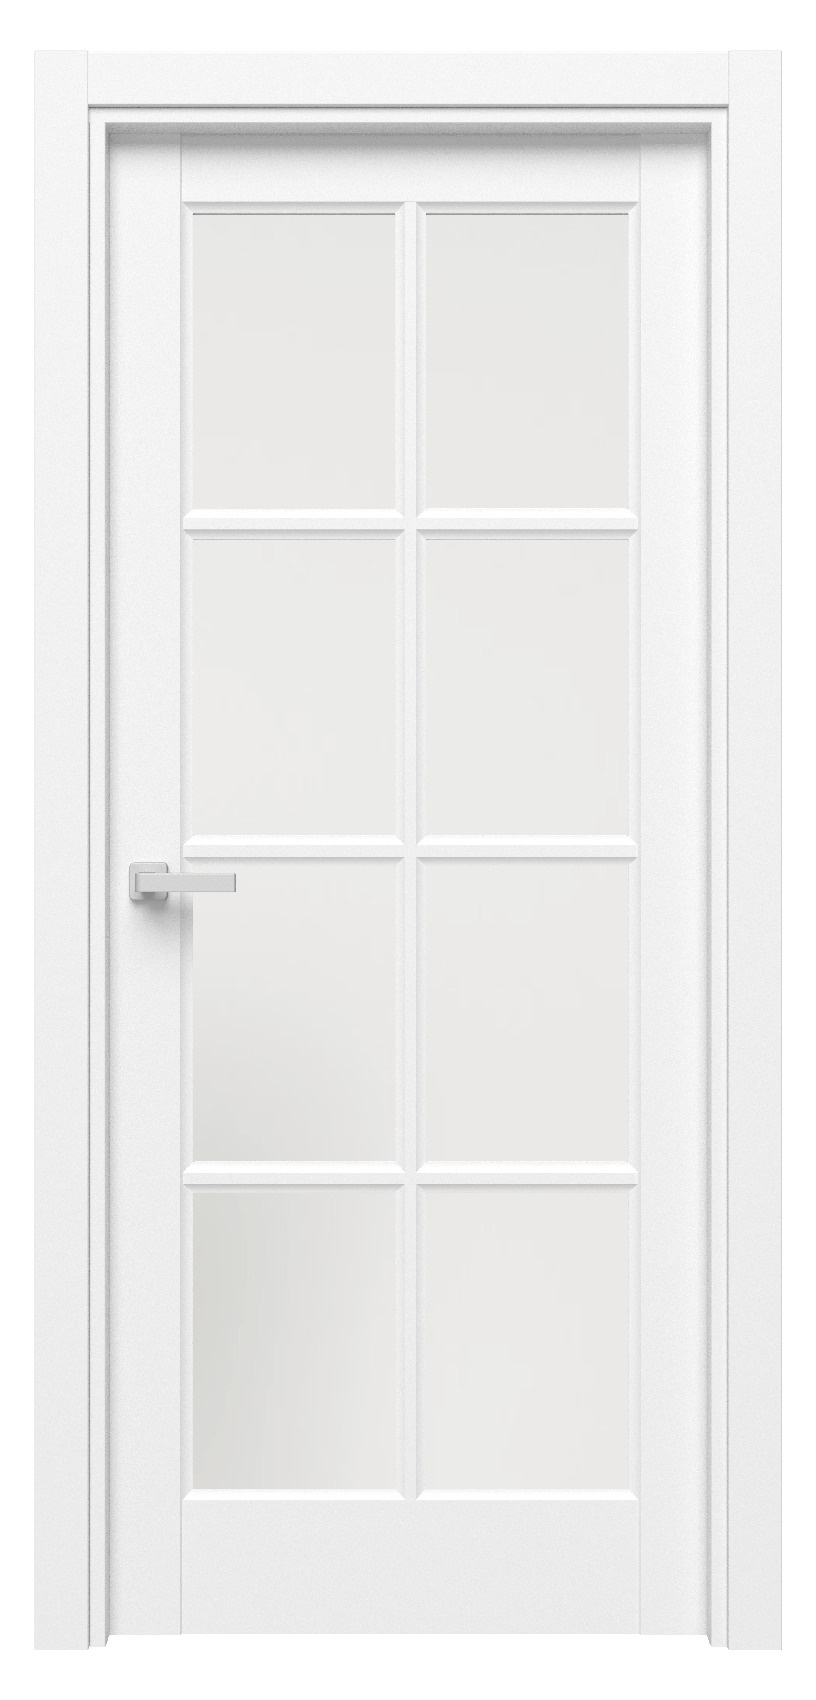 Questdoors Межкомнатная дверь QD8, арт. 17521 - фото №1